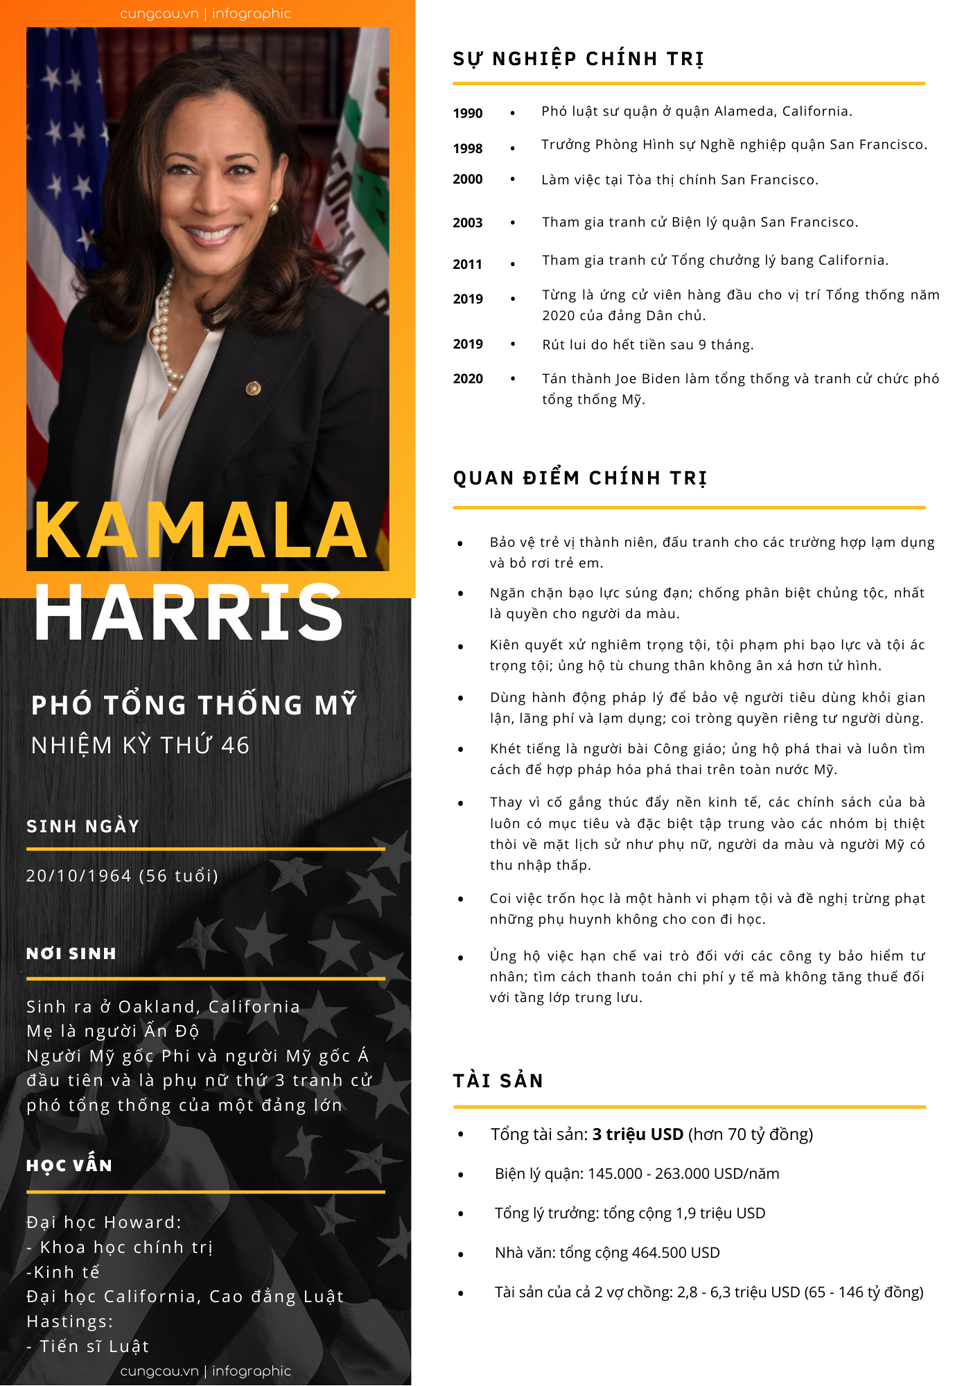 Hồ sơ Kamala Harris